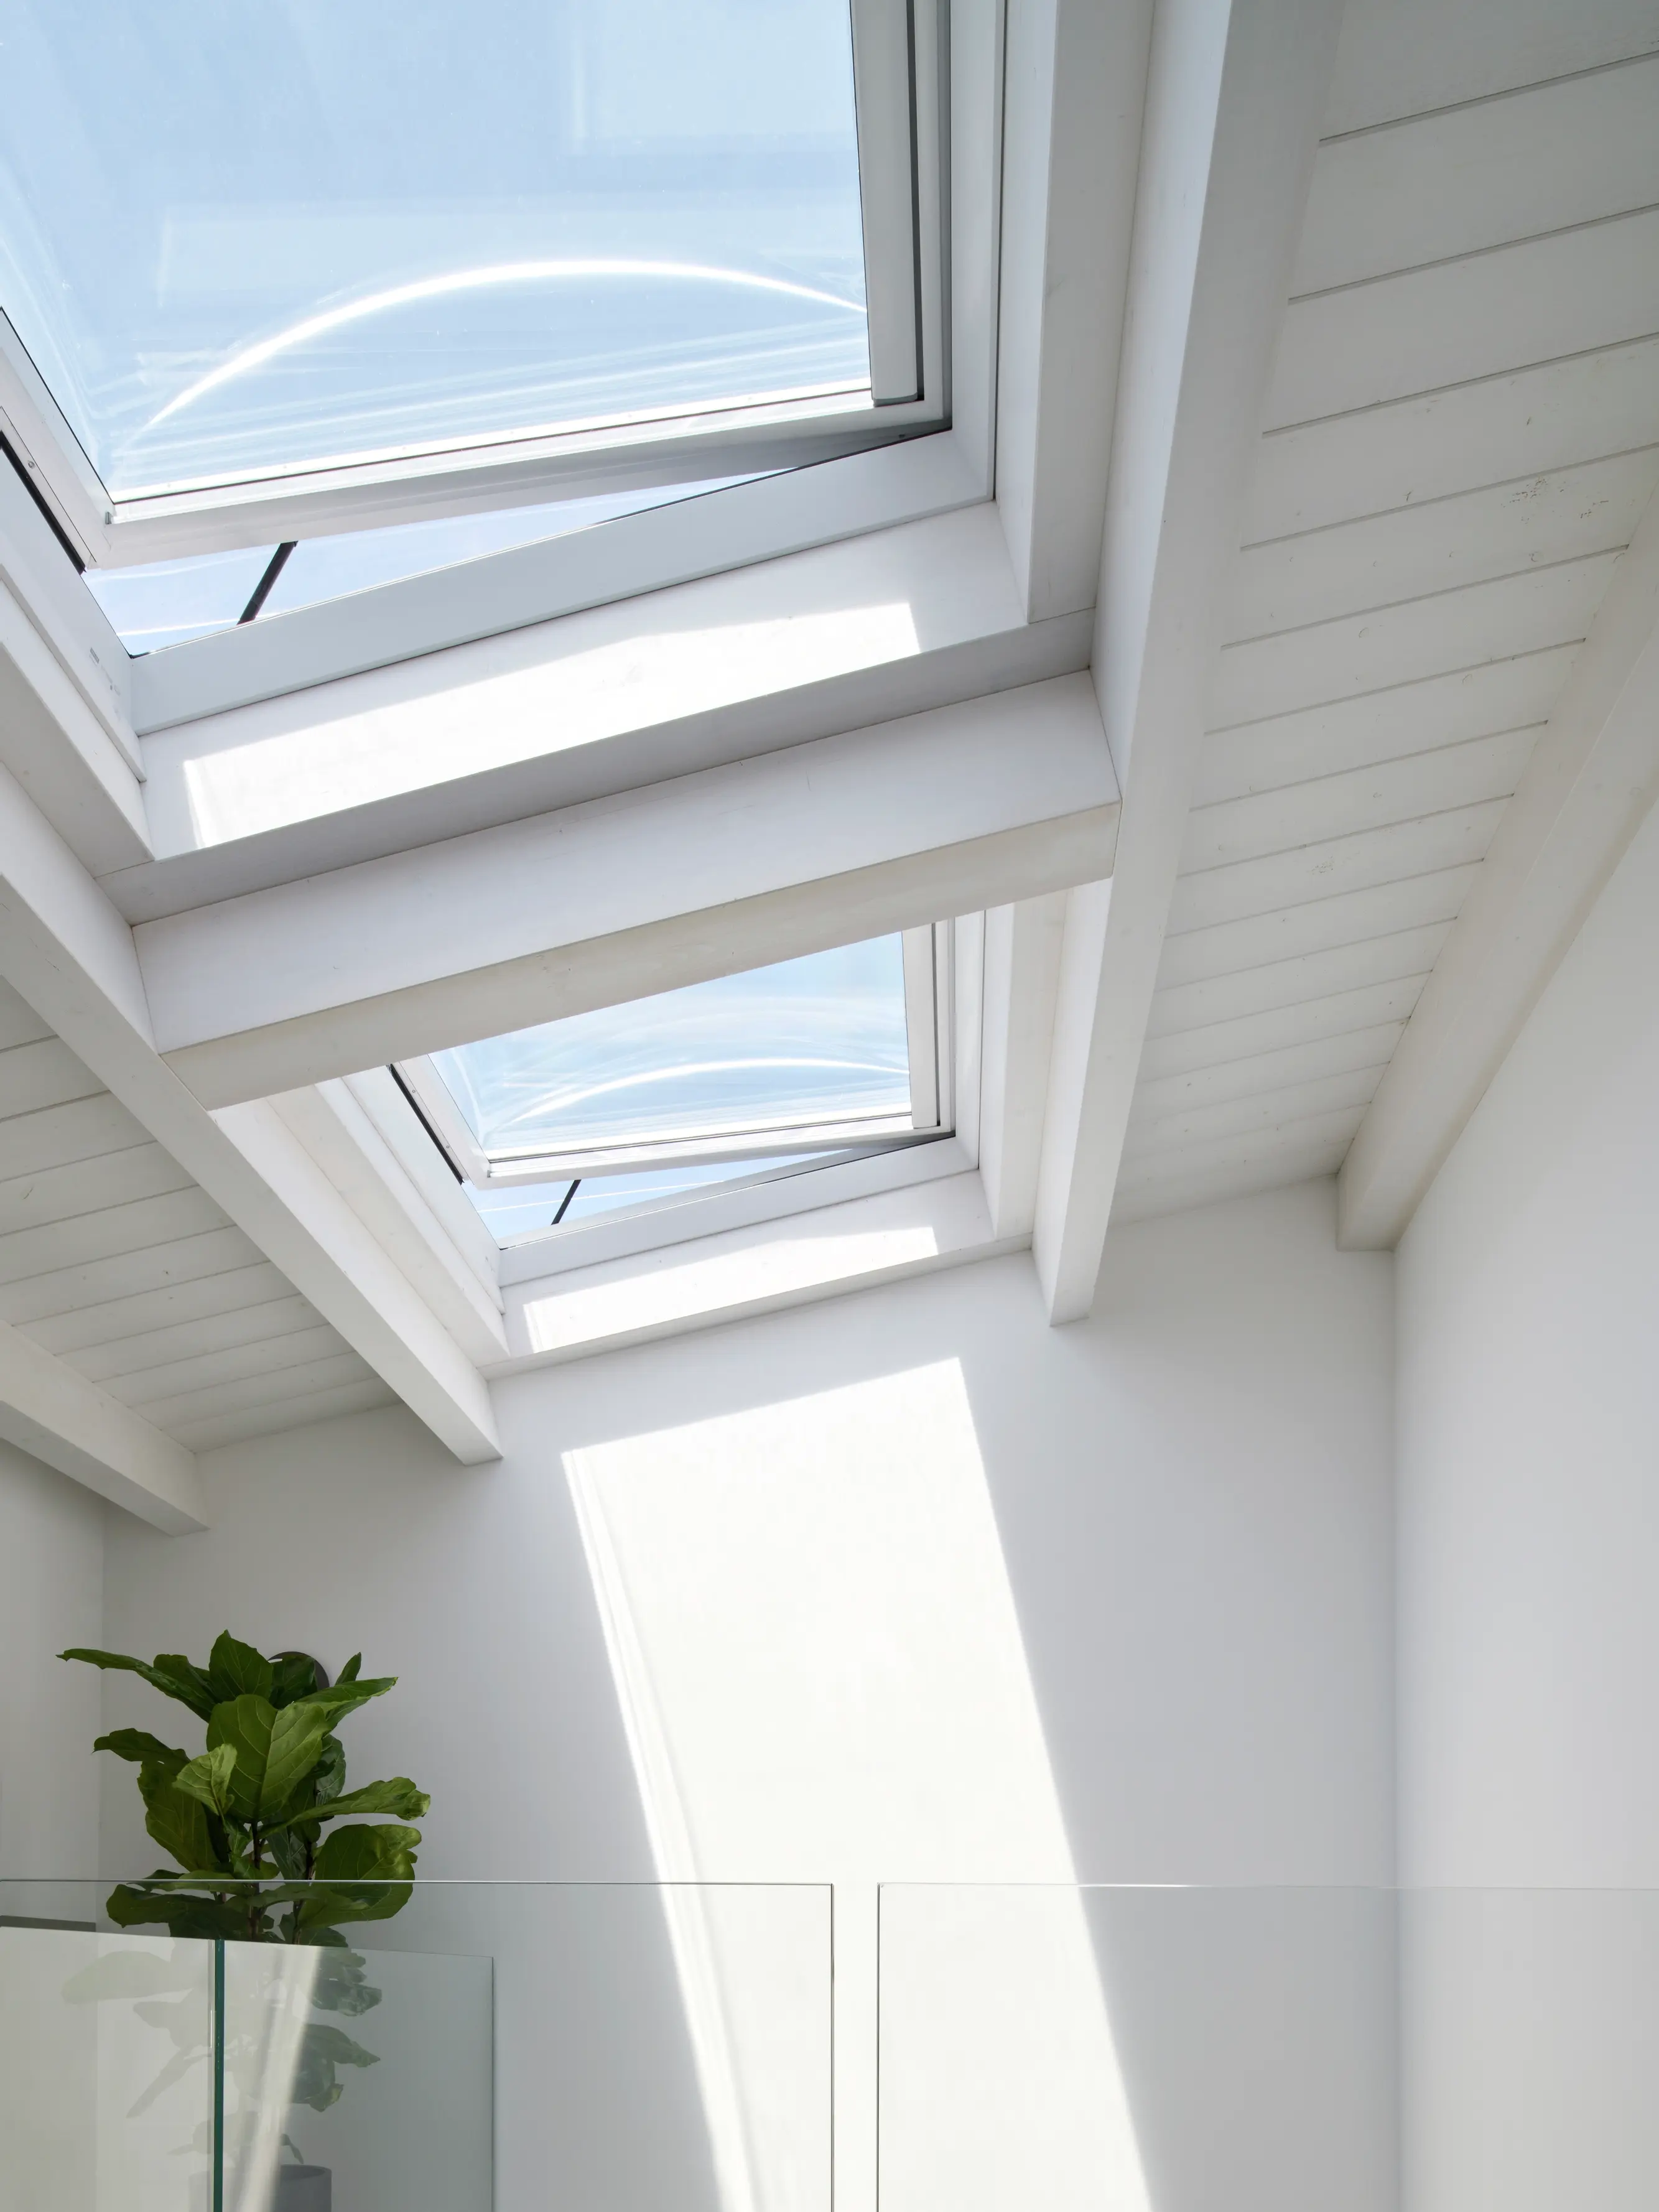 Finestra per tetti VELUX su tetto in tegole sopra finestre moderne con doppio vetro.